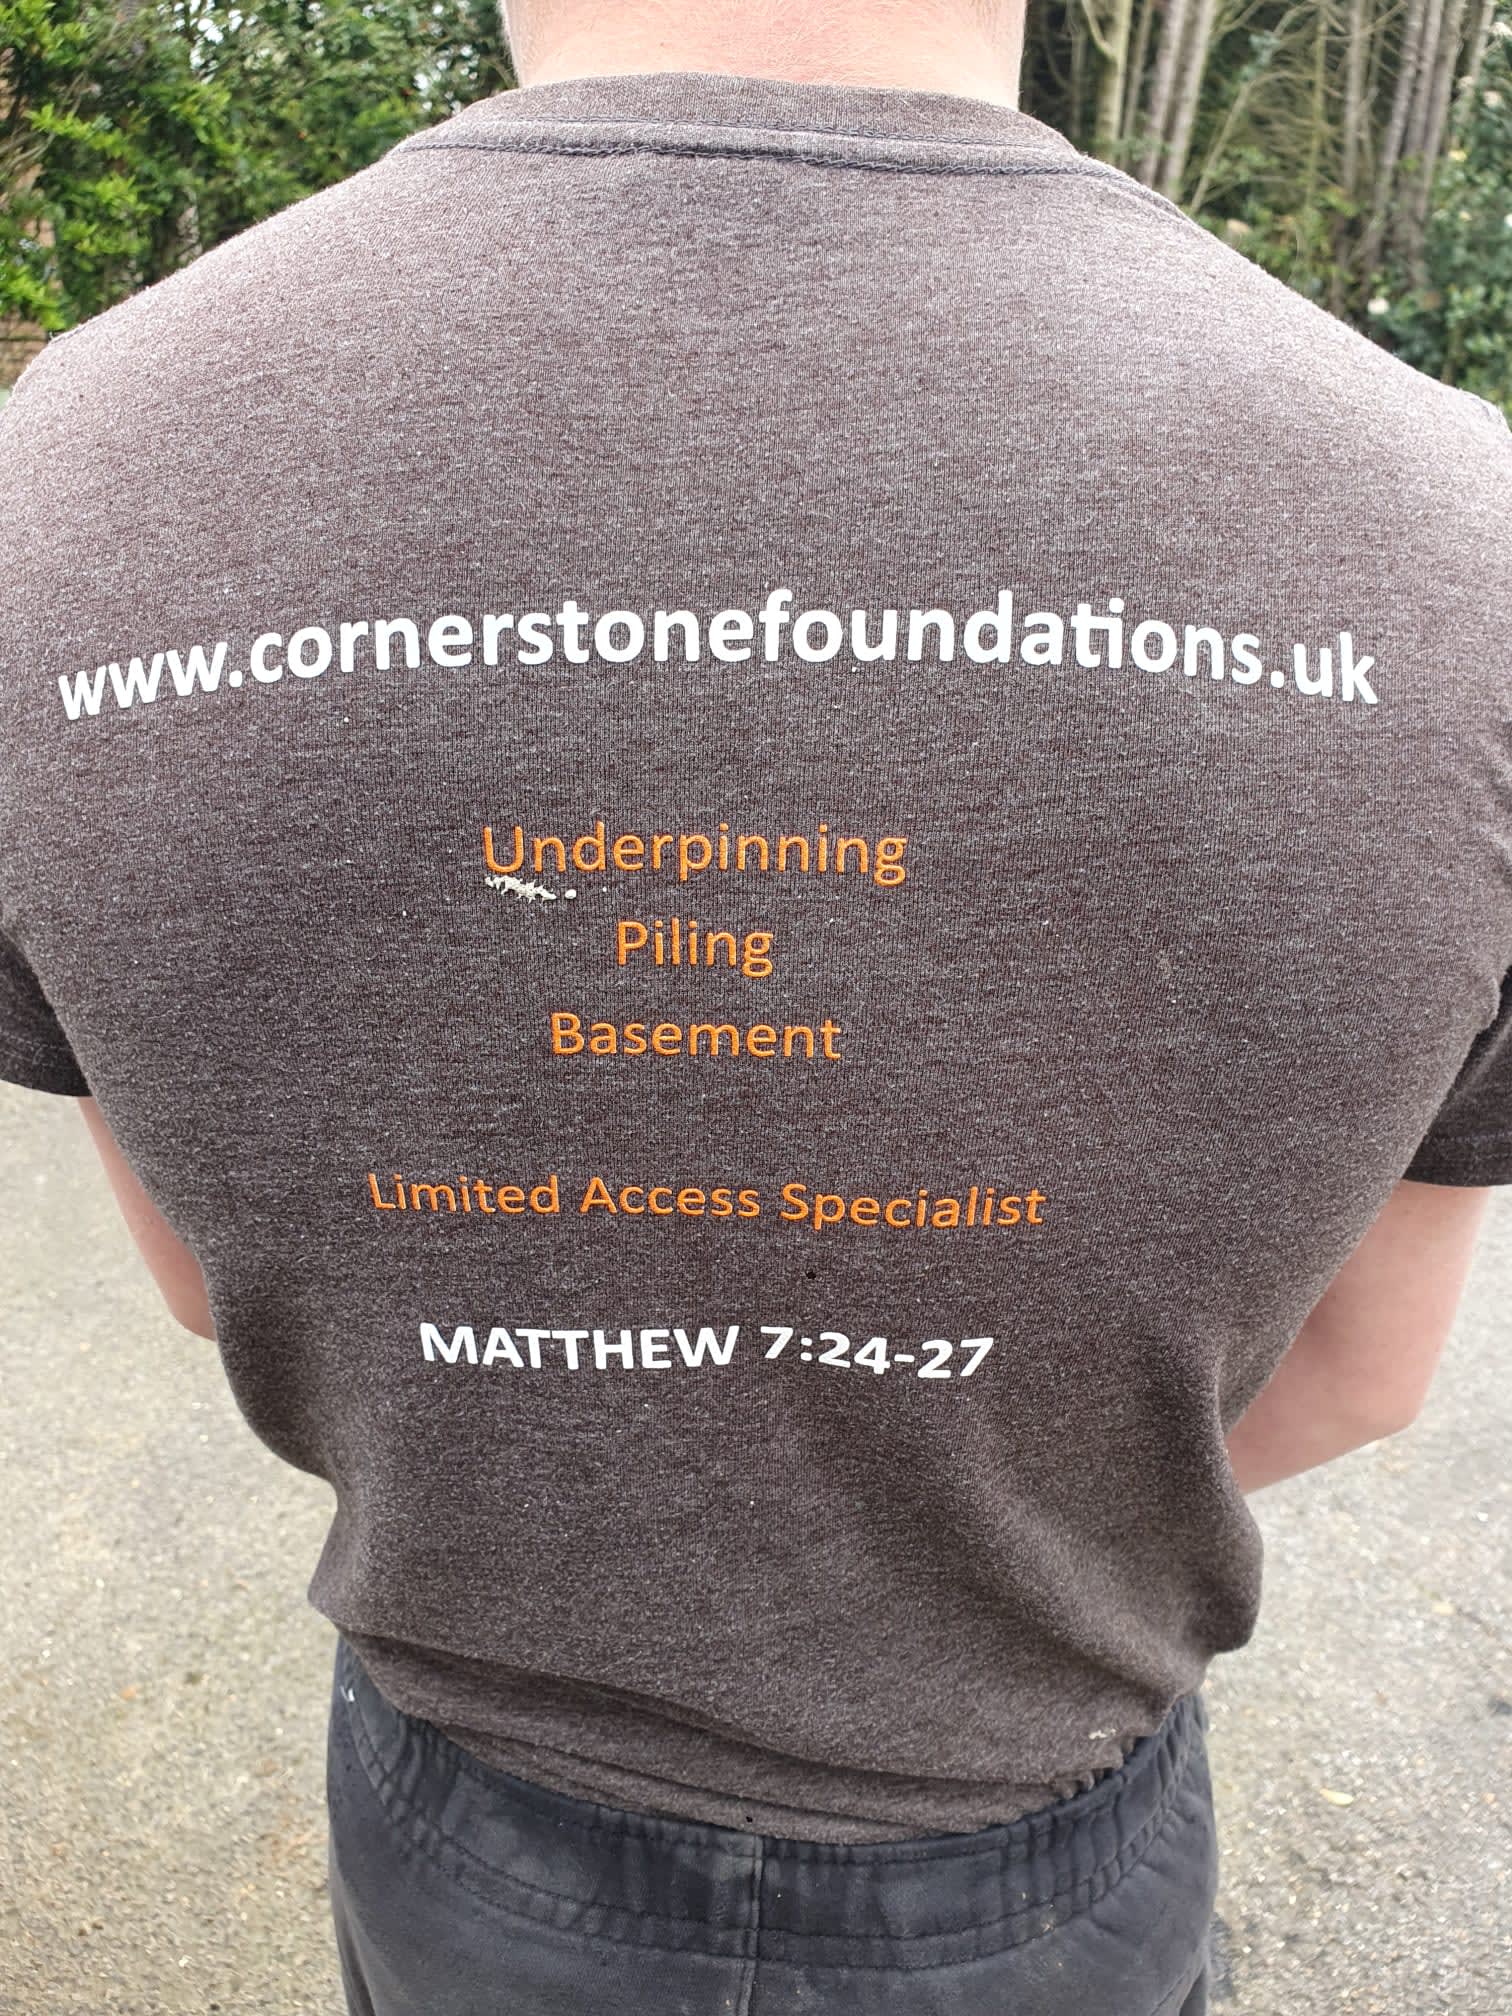 Images Cornerstone Foundations UK